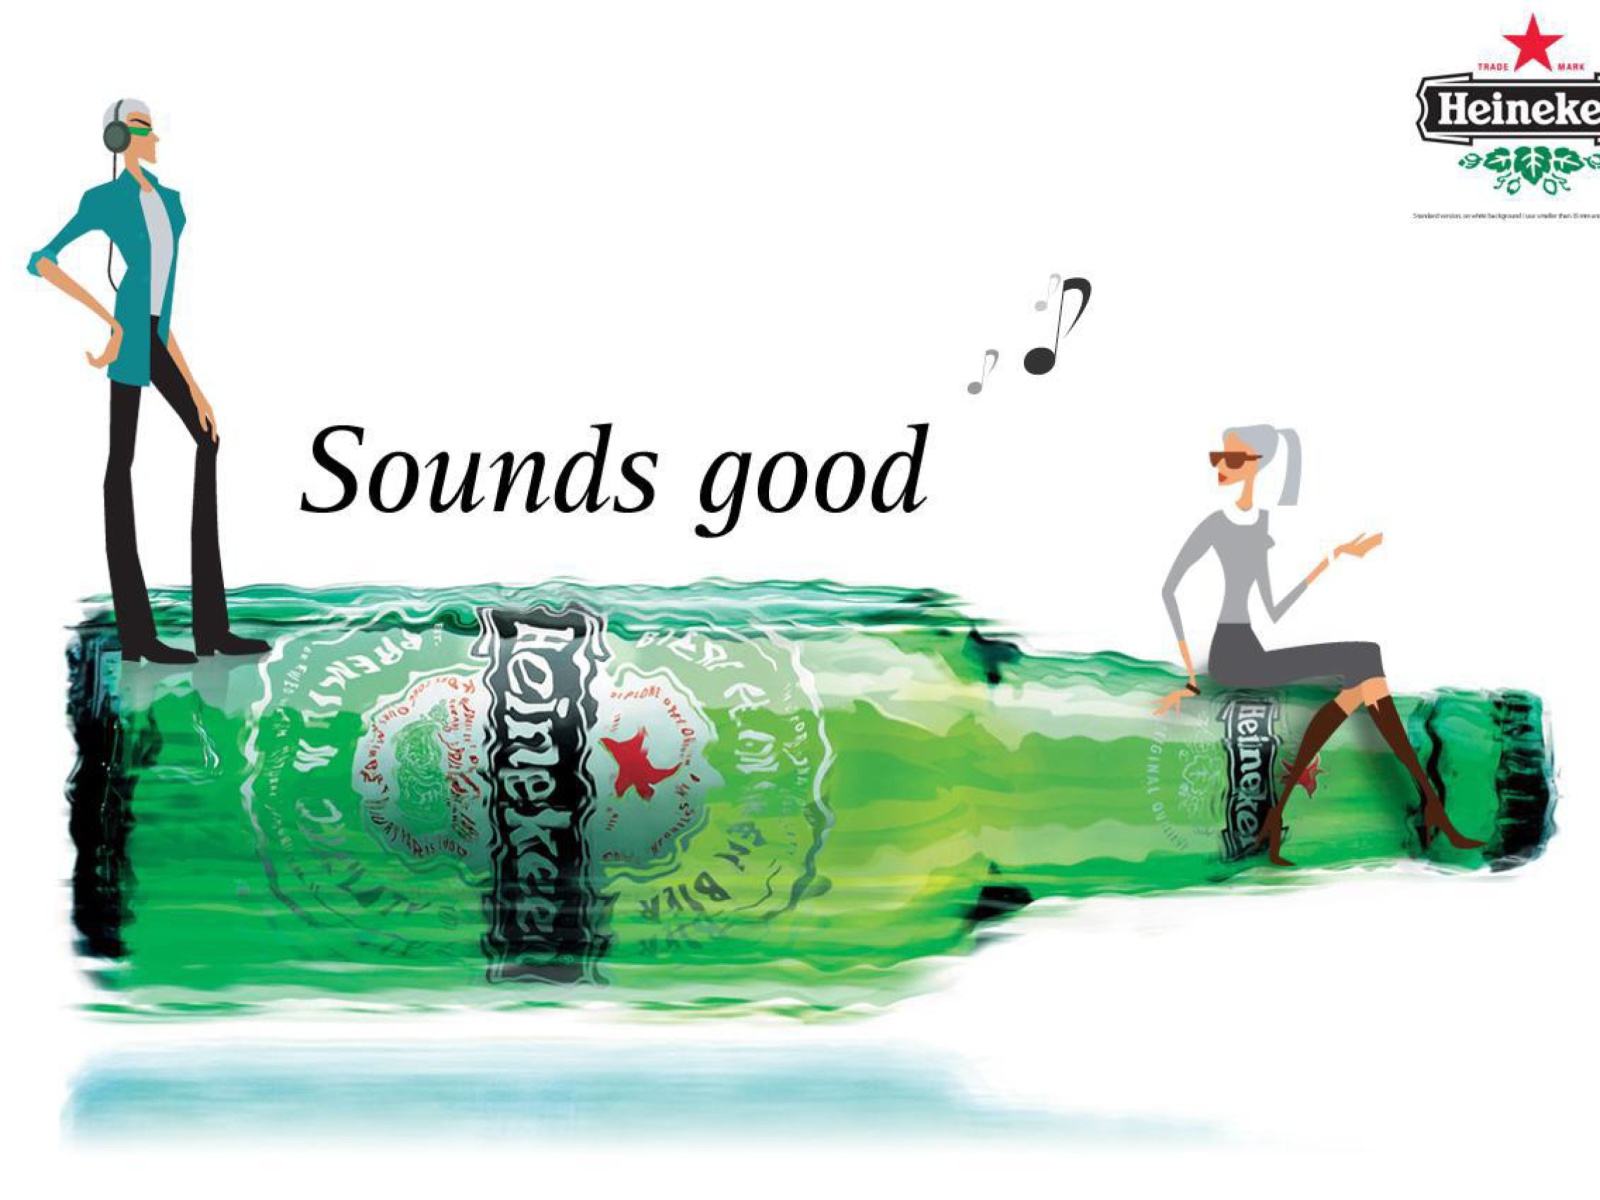 Sfondi Heineken, Sounds good 1600x1200